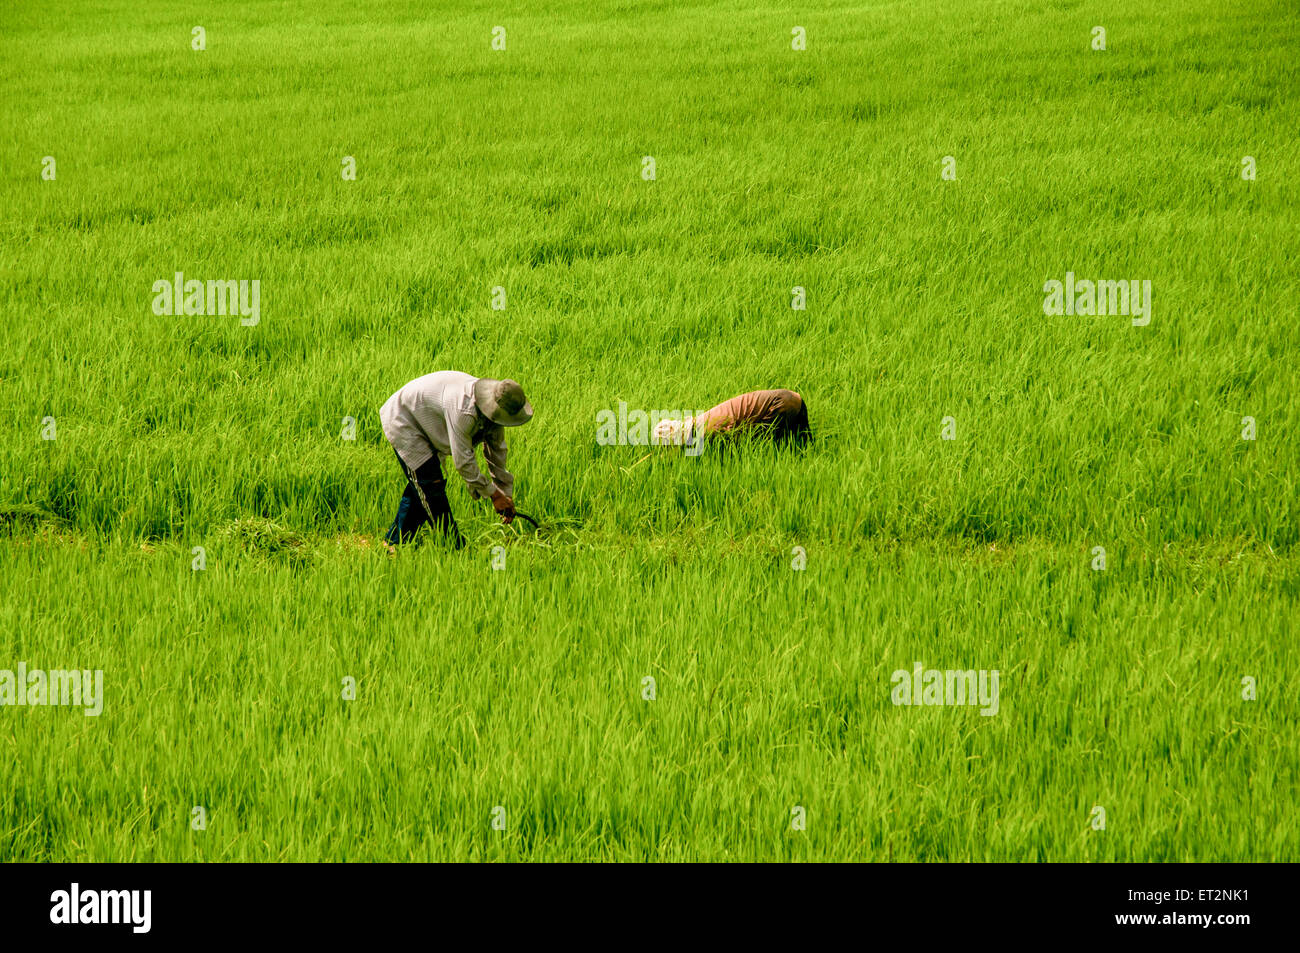 Travaillant dans une rizière photographié au Vietnam, du Delta du Mékong Banque D'Images